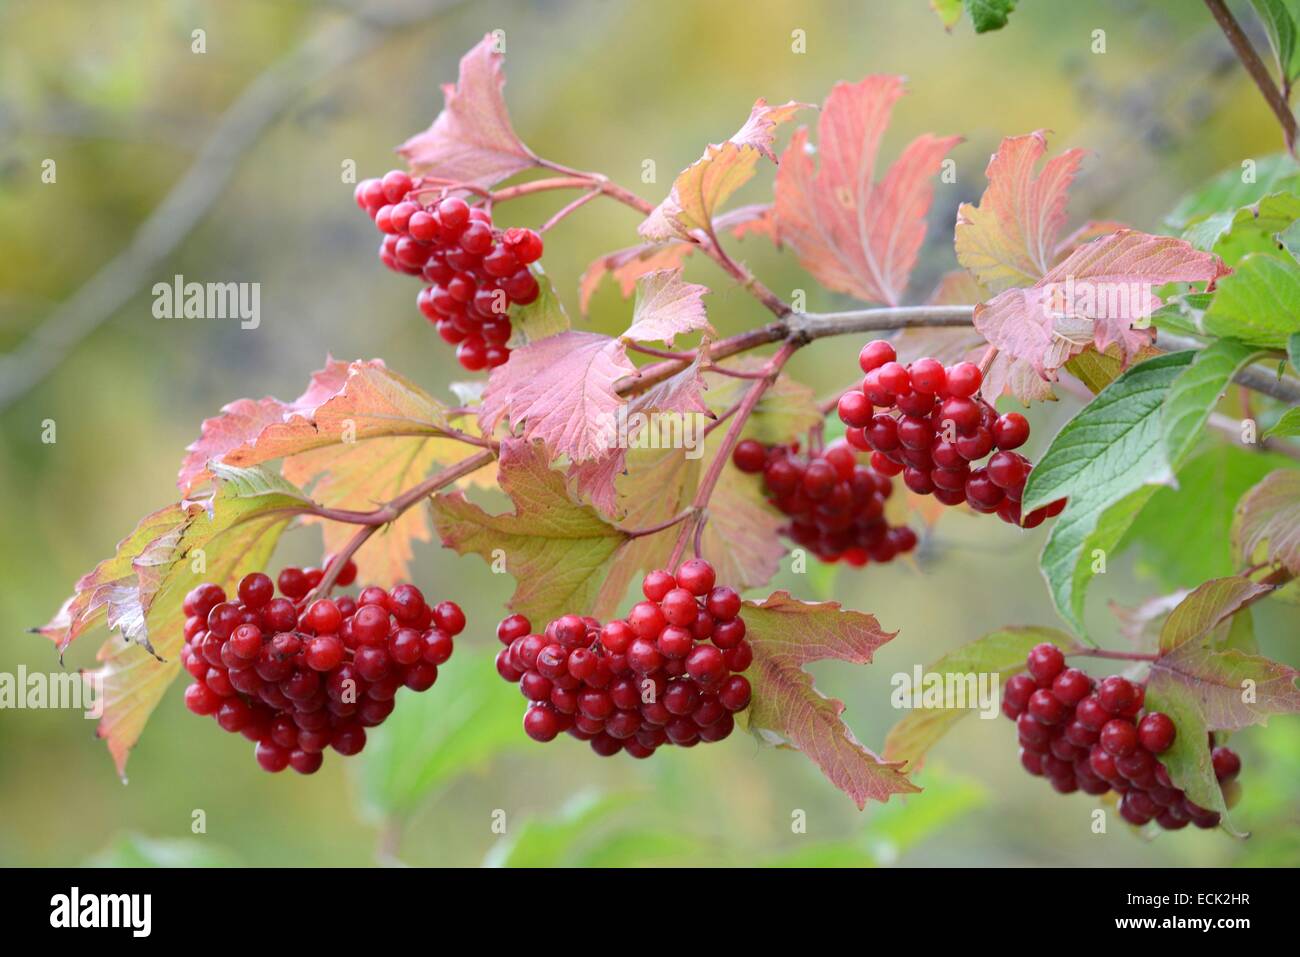 France, Doubs, tree fruits, Rowan or Rowan birds (Sorbus aucuparia) Stock Photo